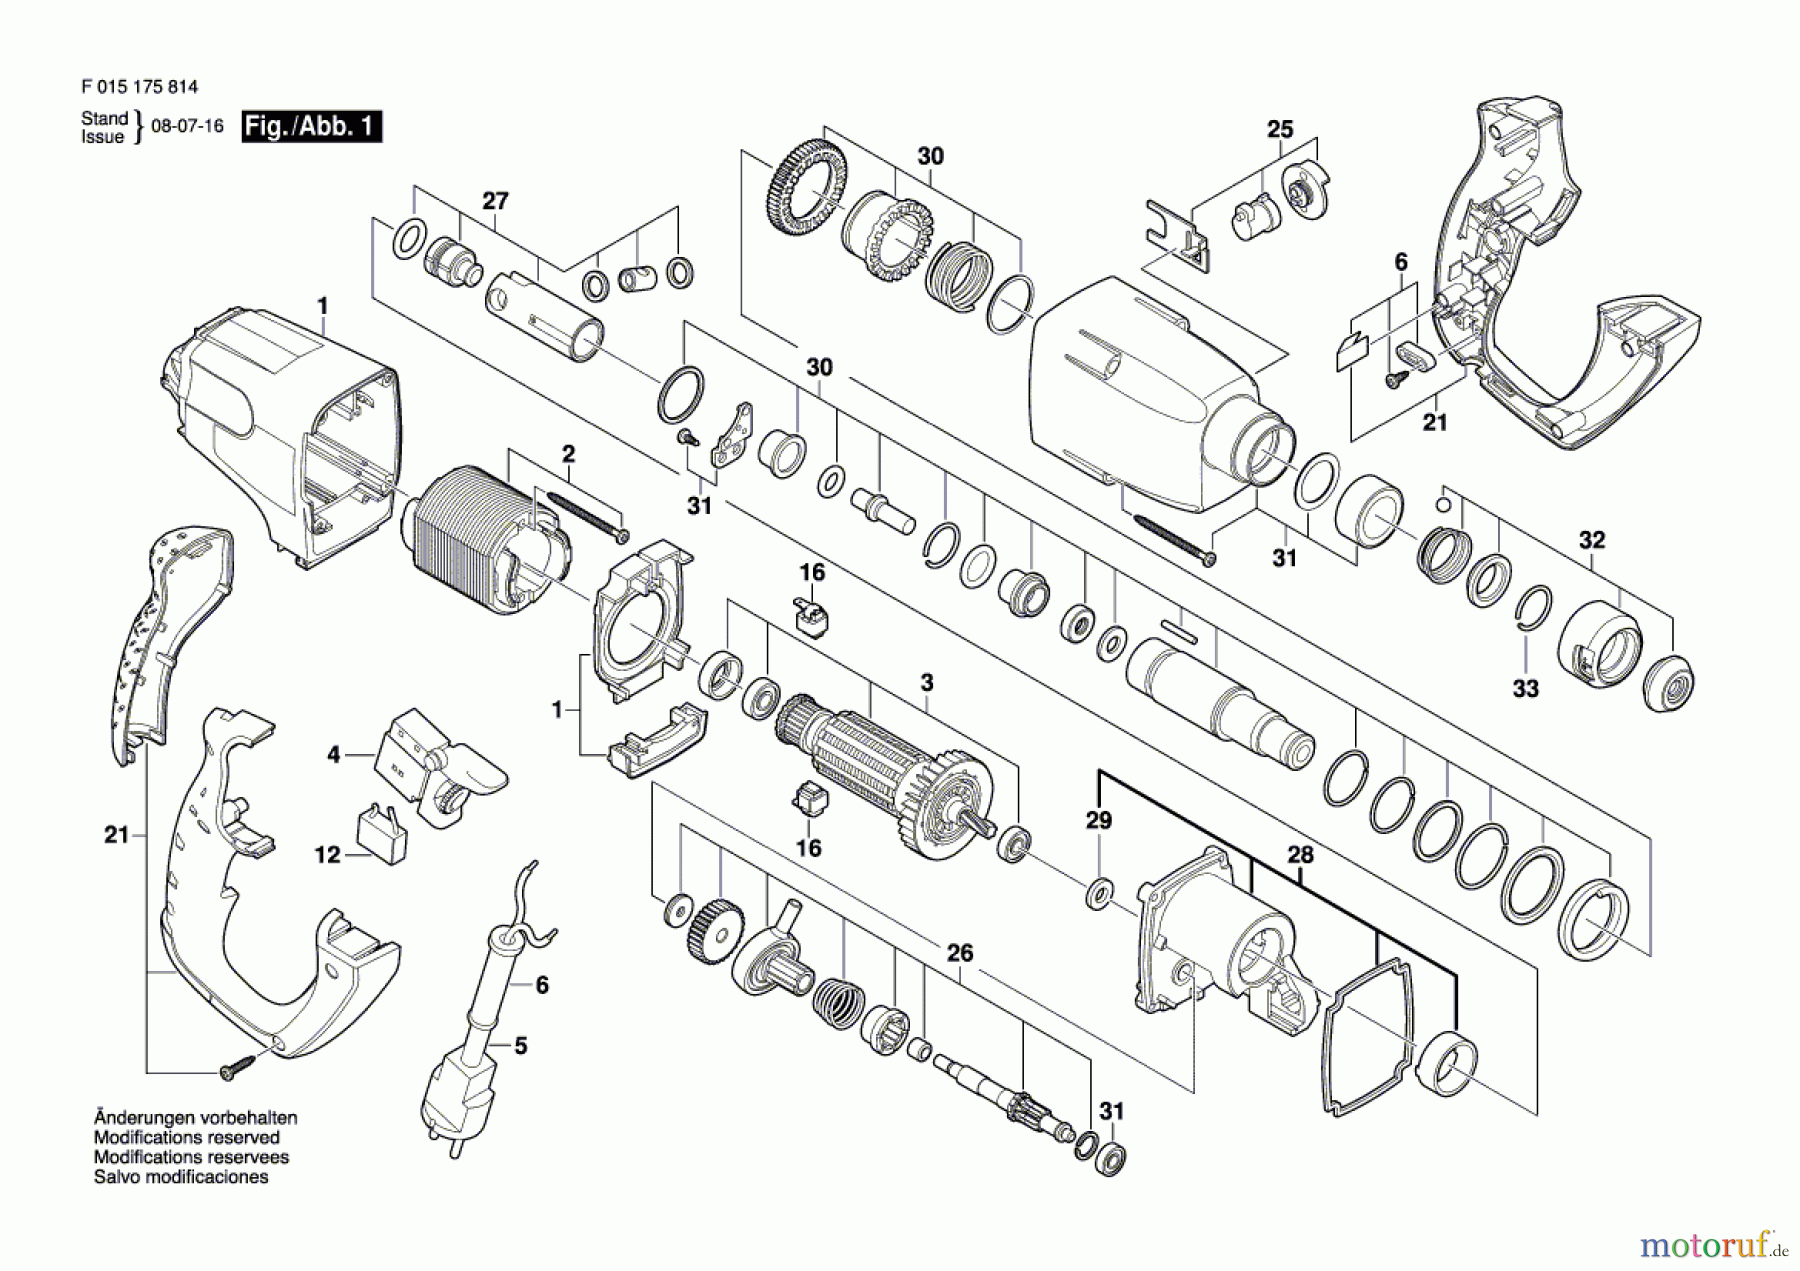  Bosch Werkzeug Bohrhammer 1758 Seite 1